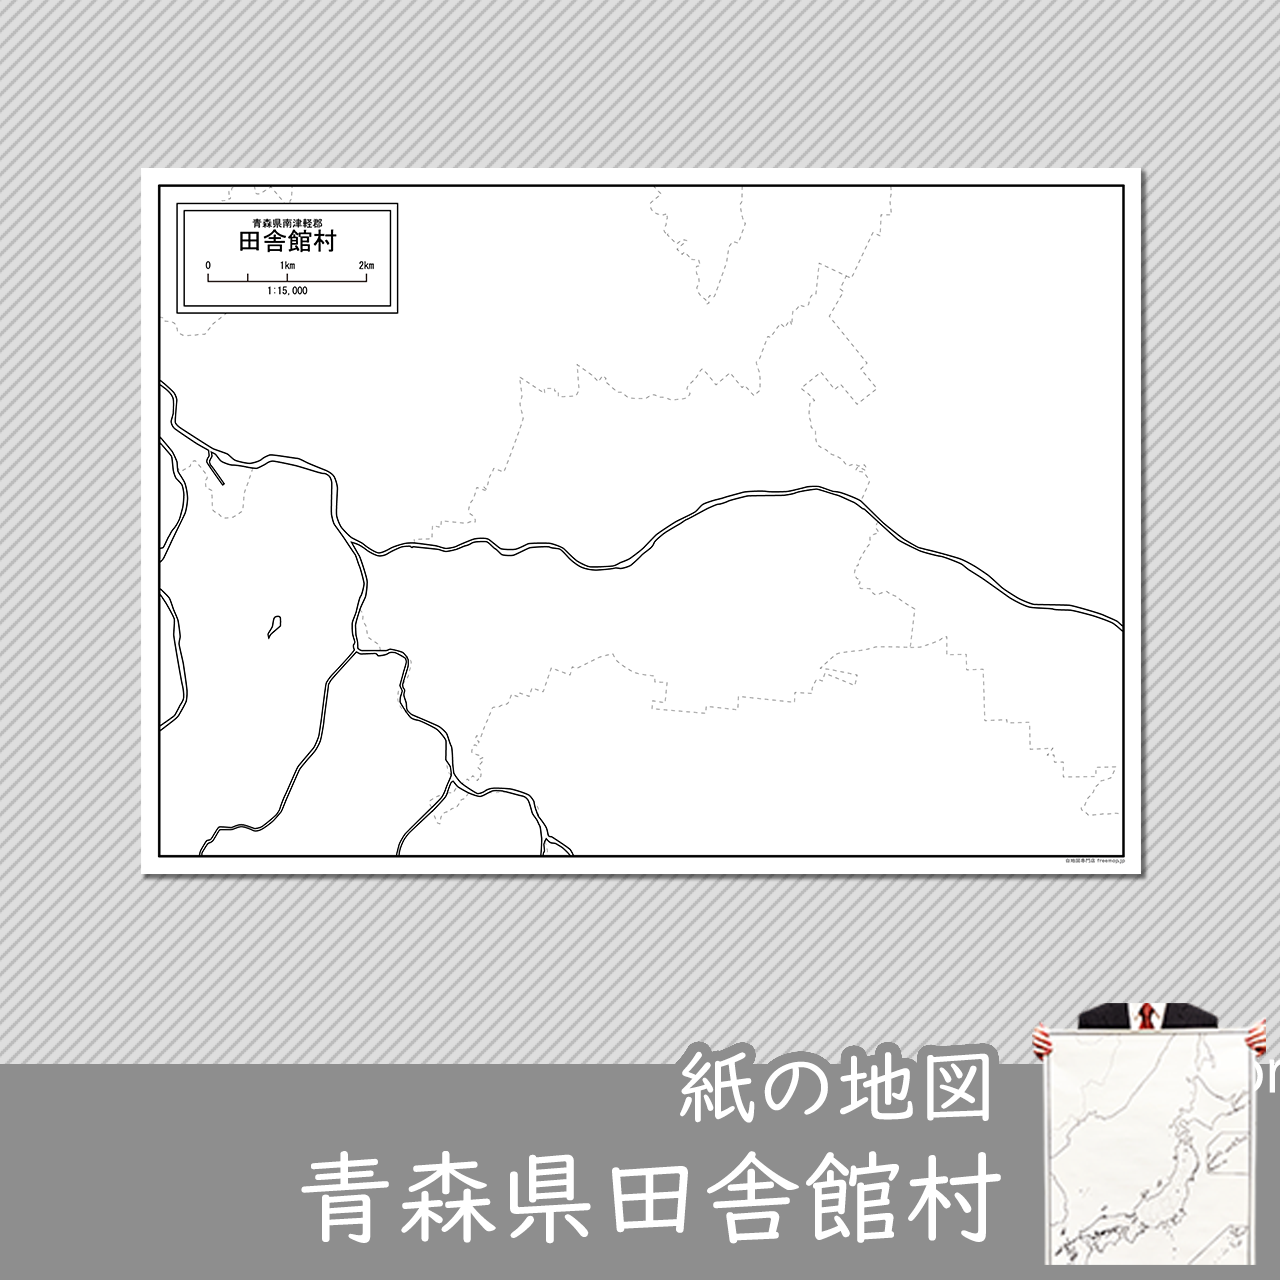 田舎館村の紙の白地図のサムネイル